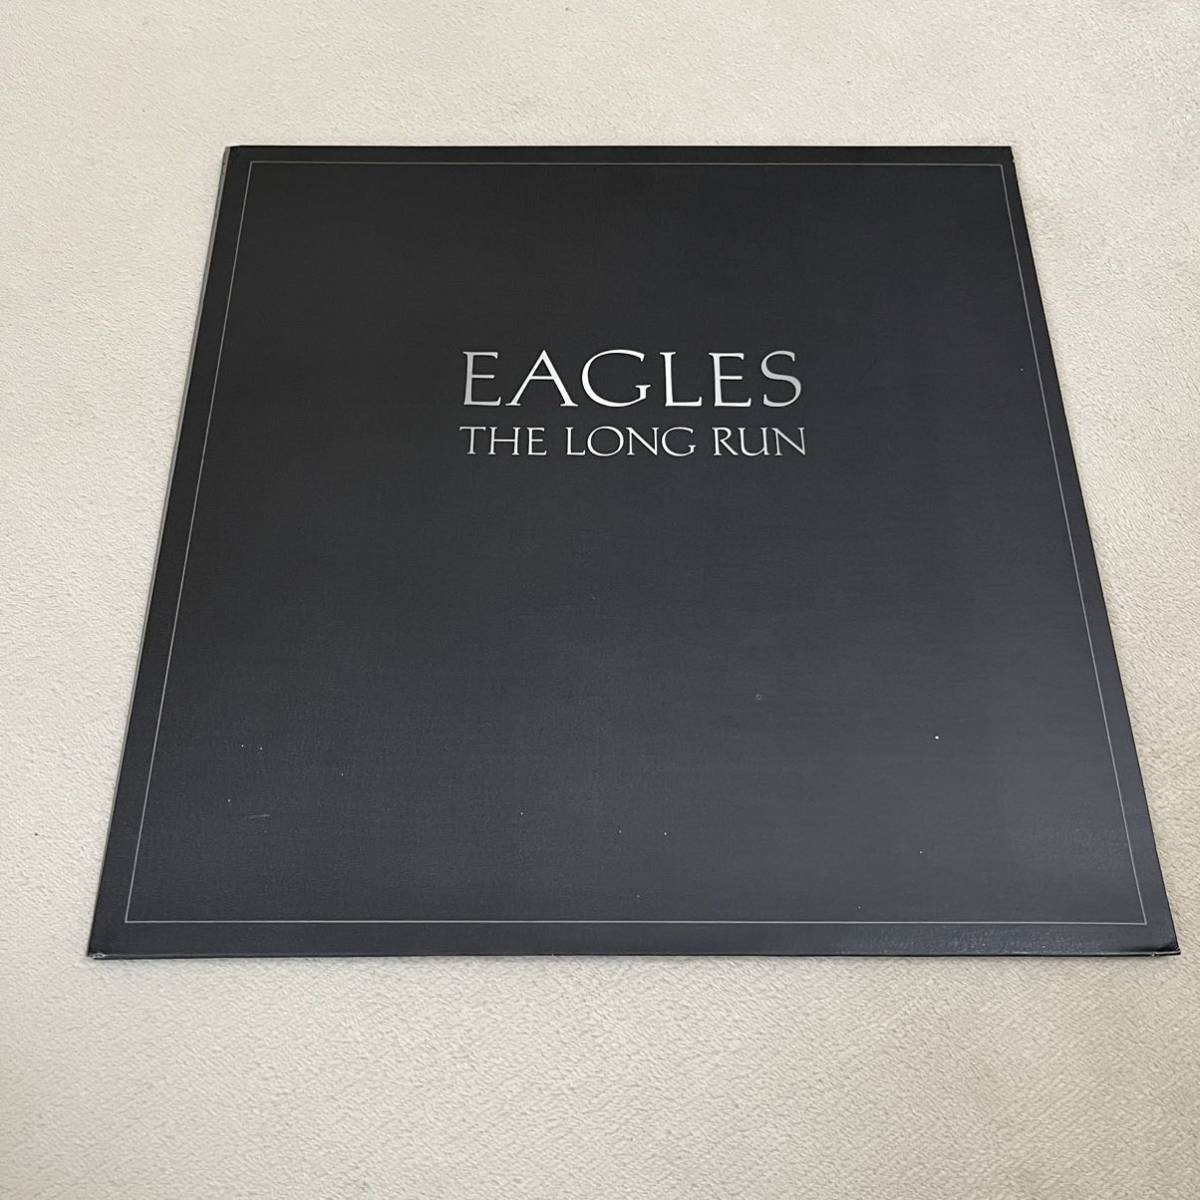 【US盤米盤】EAGLES THE LONG RUN イーグルズ / LP レコード / 5E-908 / スリーブ有 / 洋楽ロック /_画像1